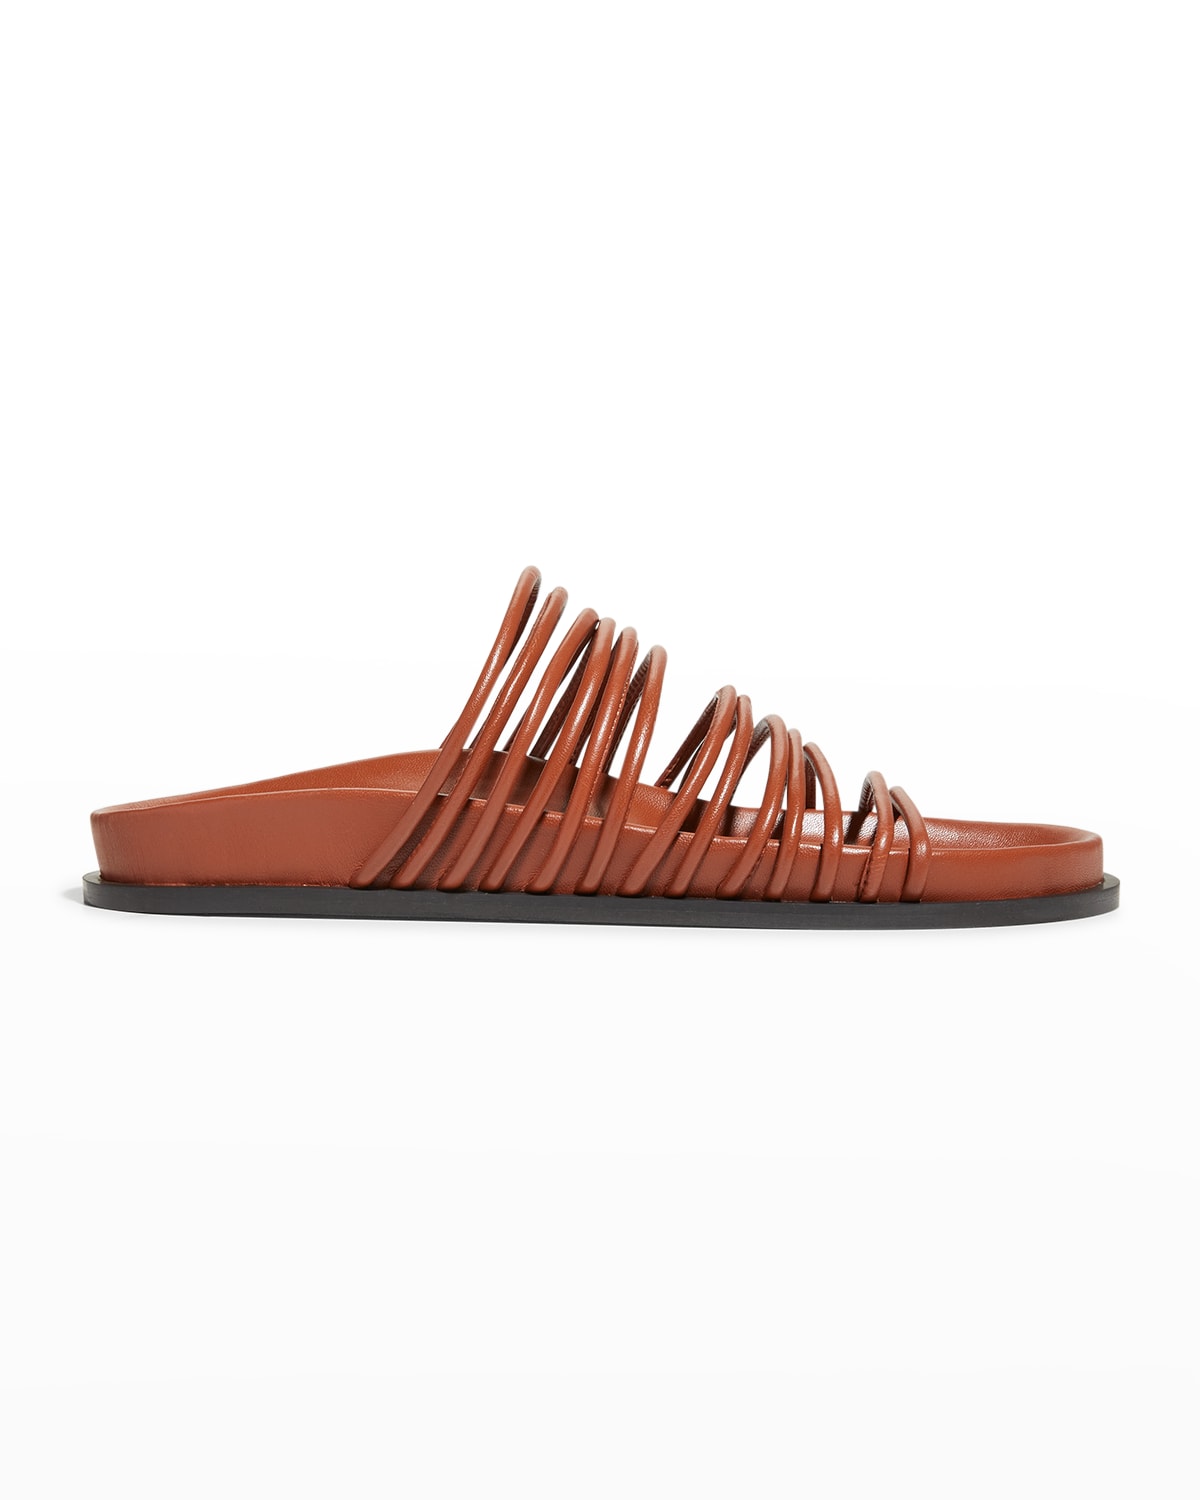 A. Emery Fallon Multi-Strap Slide Sandals